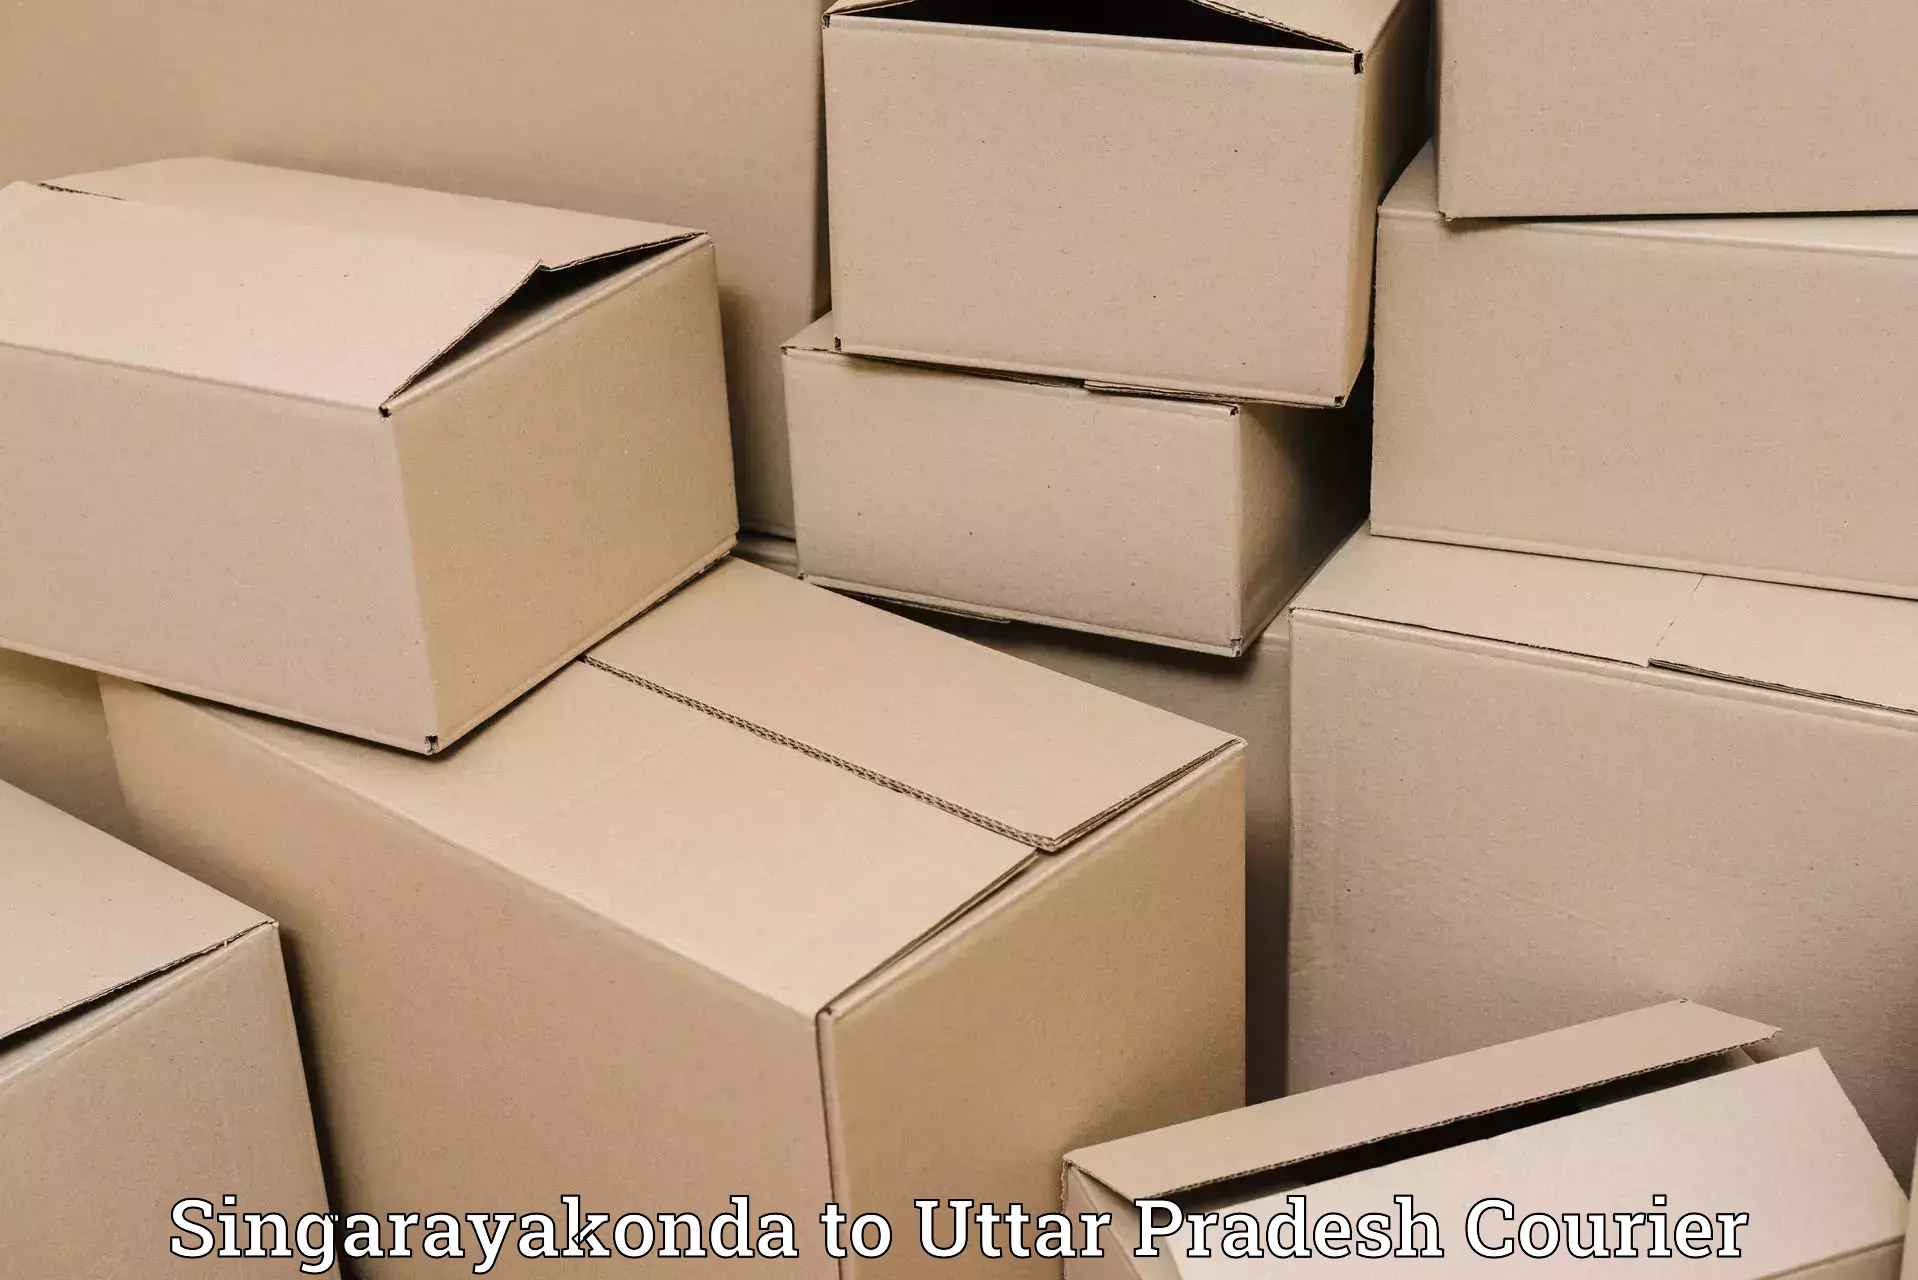 Luggage shipment processing Singarayakonda to Uttar Pradesh